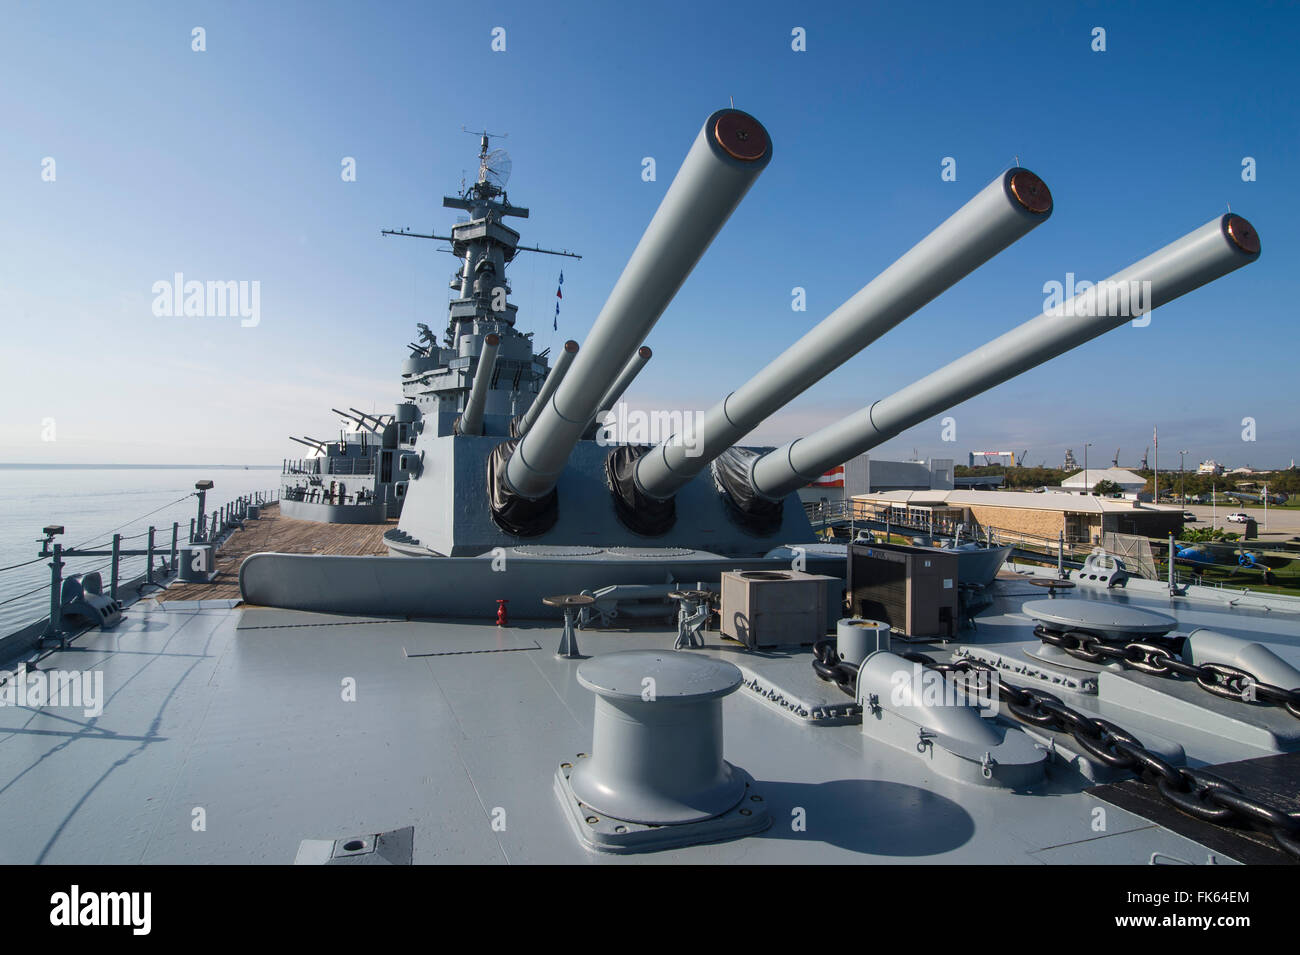 Kriegsschiff USS Alabama in die USS Alabama Battleship Memorial Park, Mobile, Alabama, Vereinigte Staaten von Amerika, Nordamerika Stockfoto